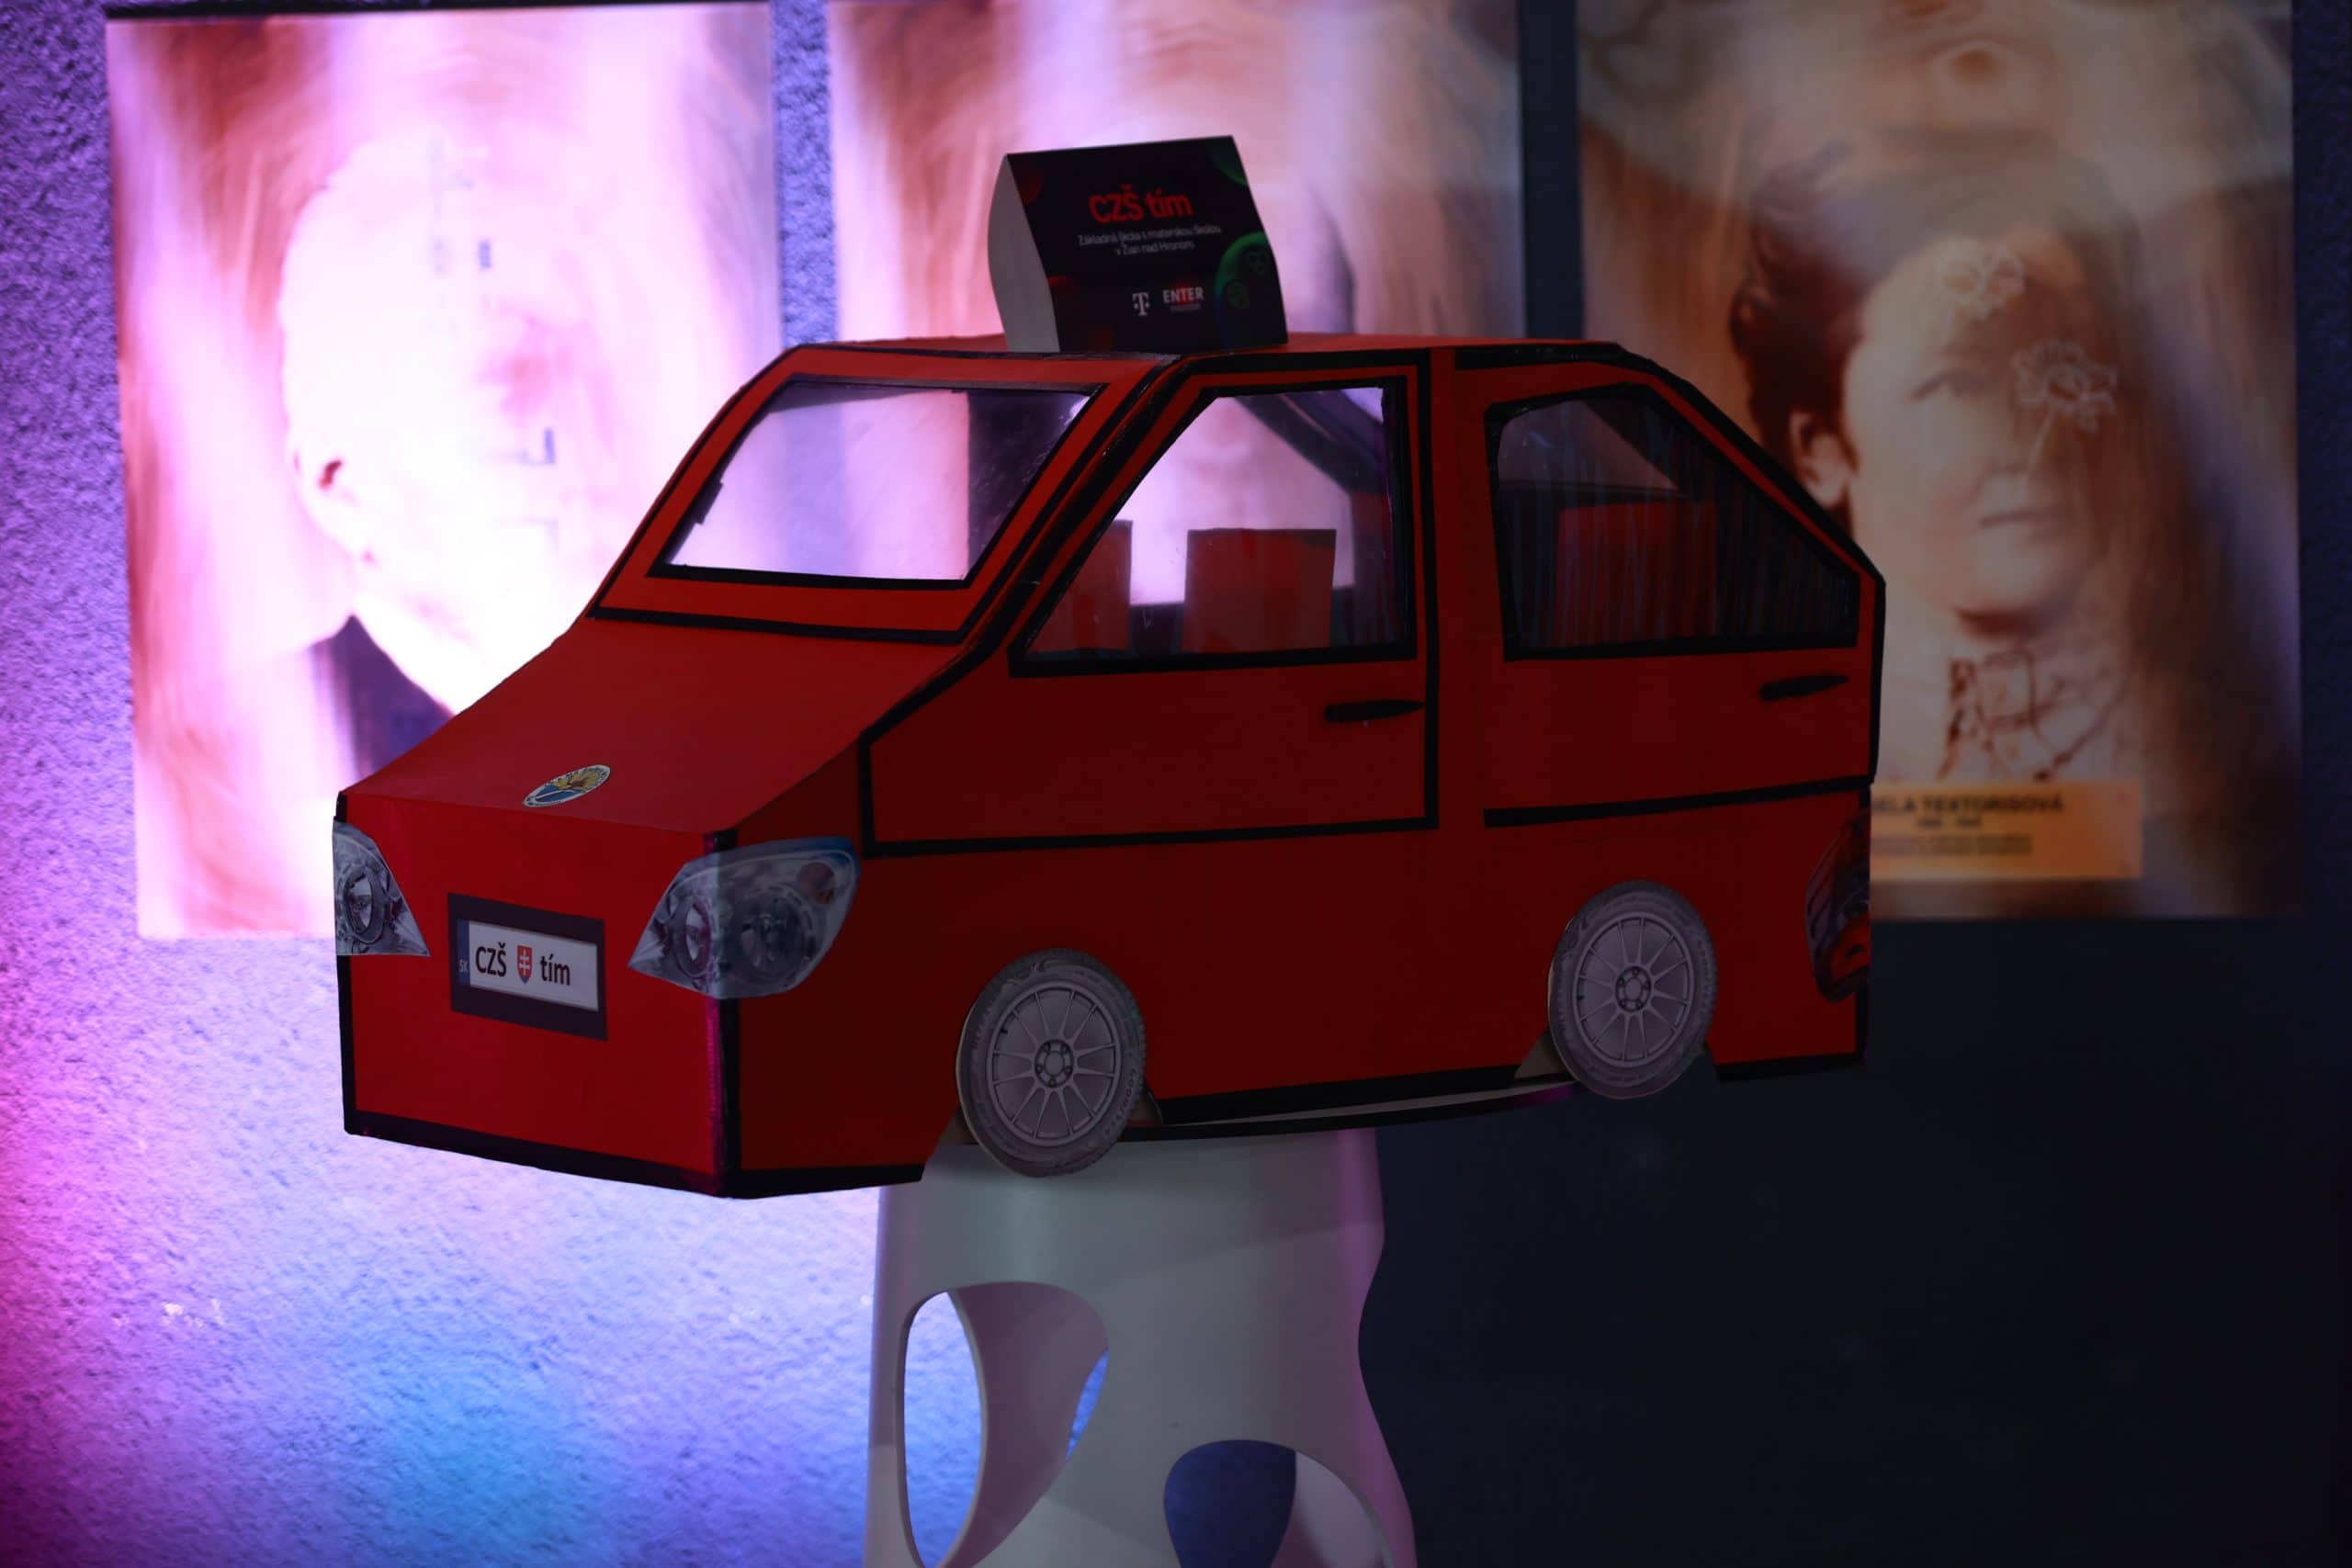 Žiaci ZŠ vytvorili projekt, ktorý zachraňuje deti z rozpáleného auta